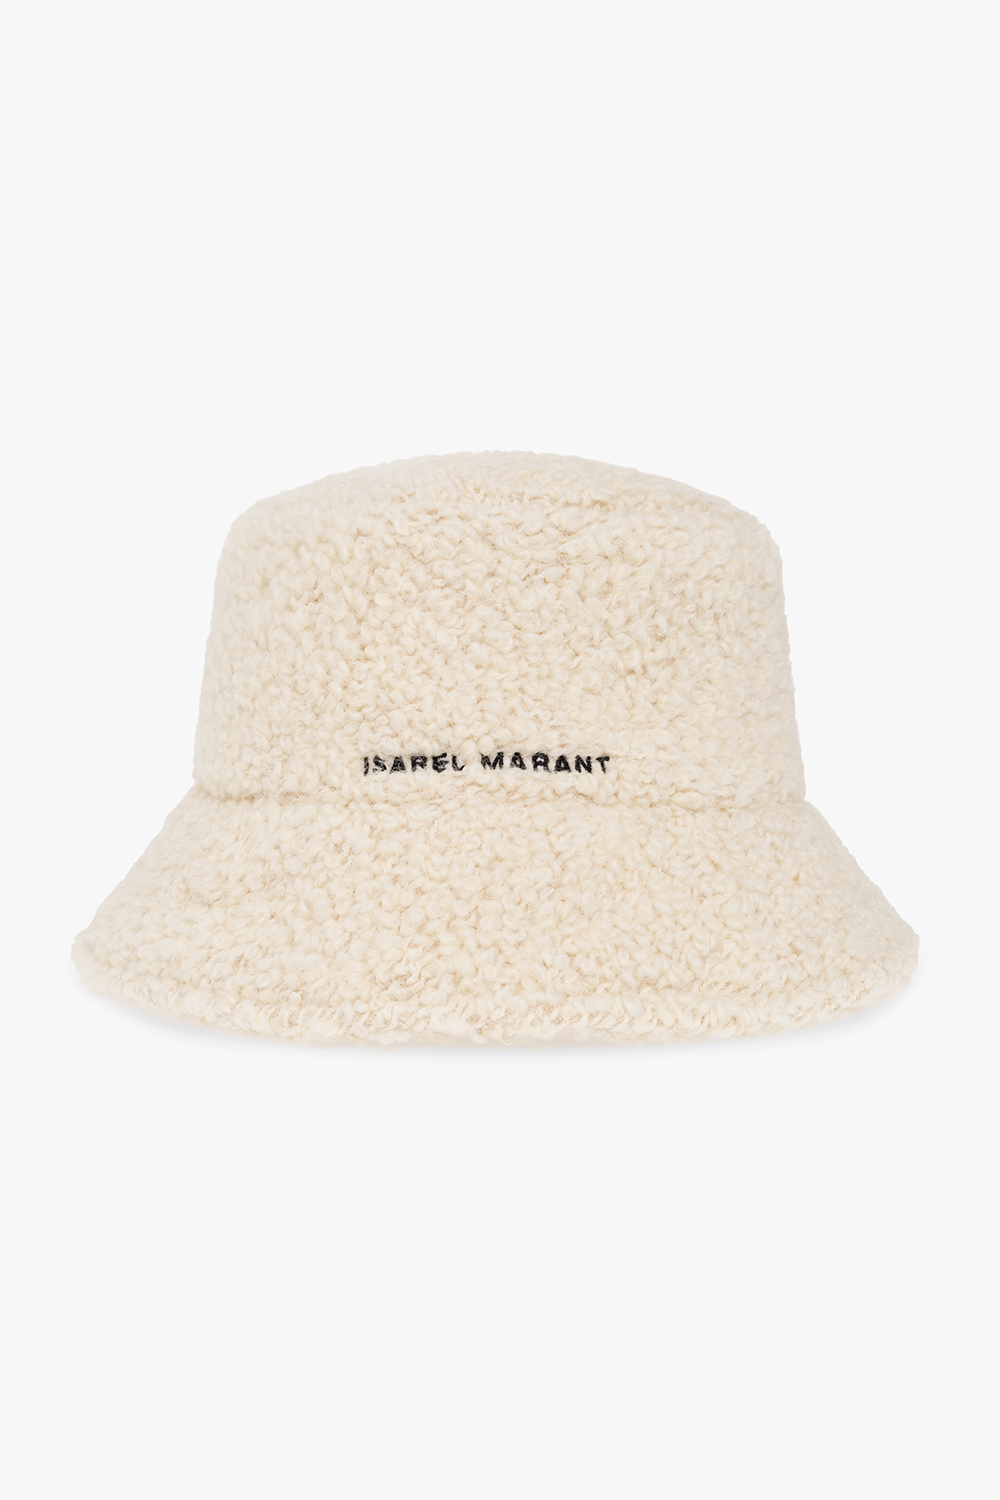 Isabel Marant ‘Denji’ bucket hat Atlfal with logo